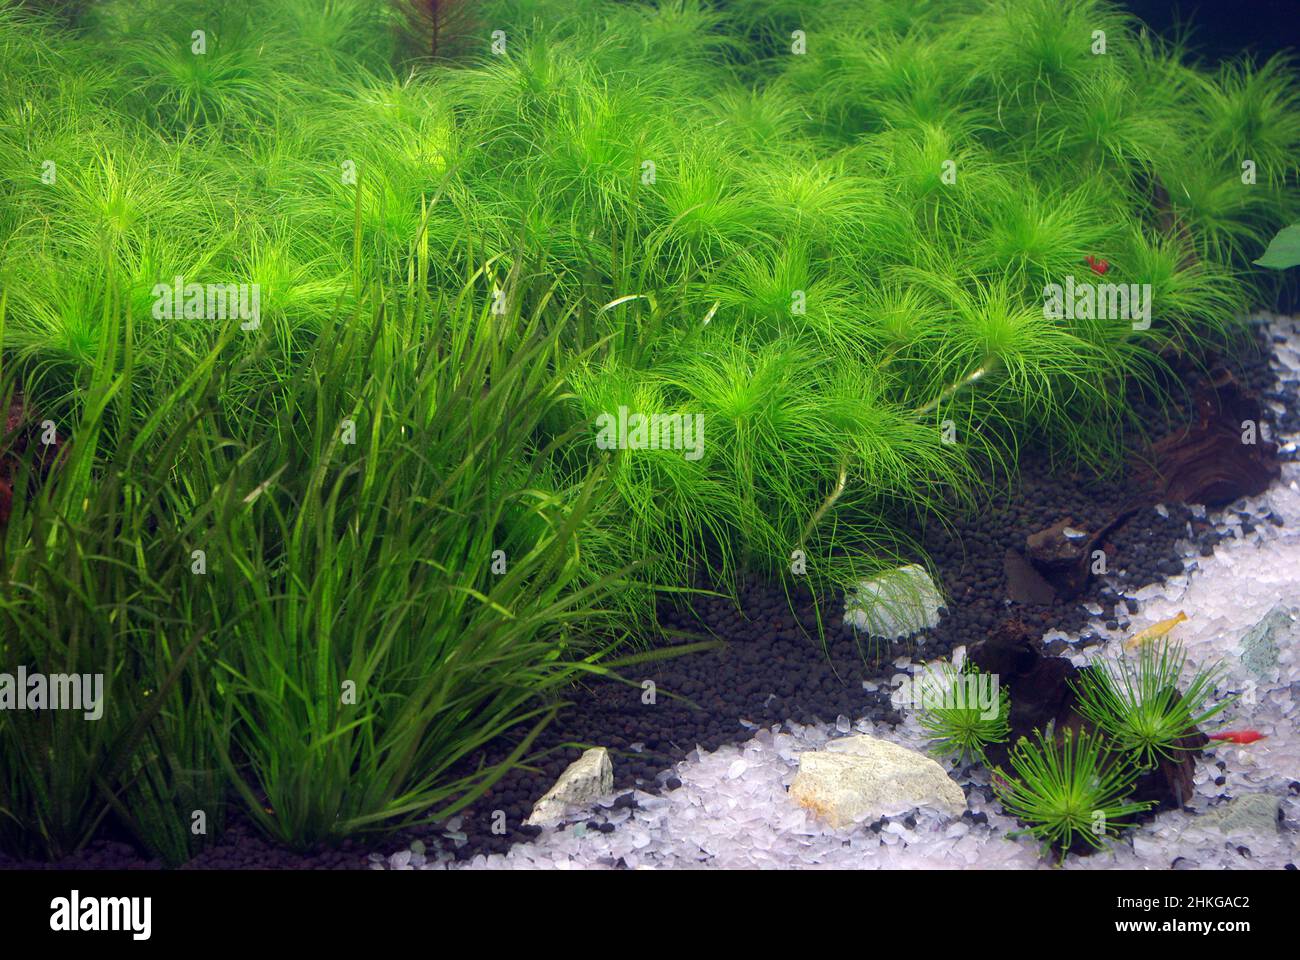 Aquarium plants Stock Photo